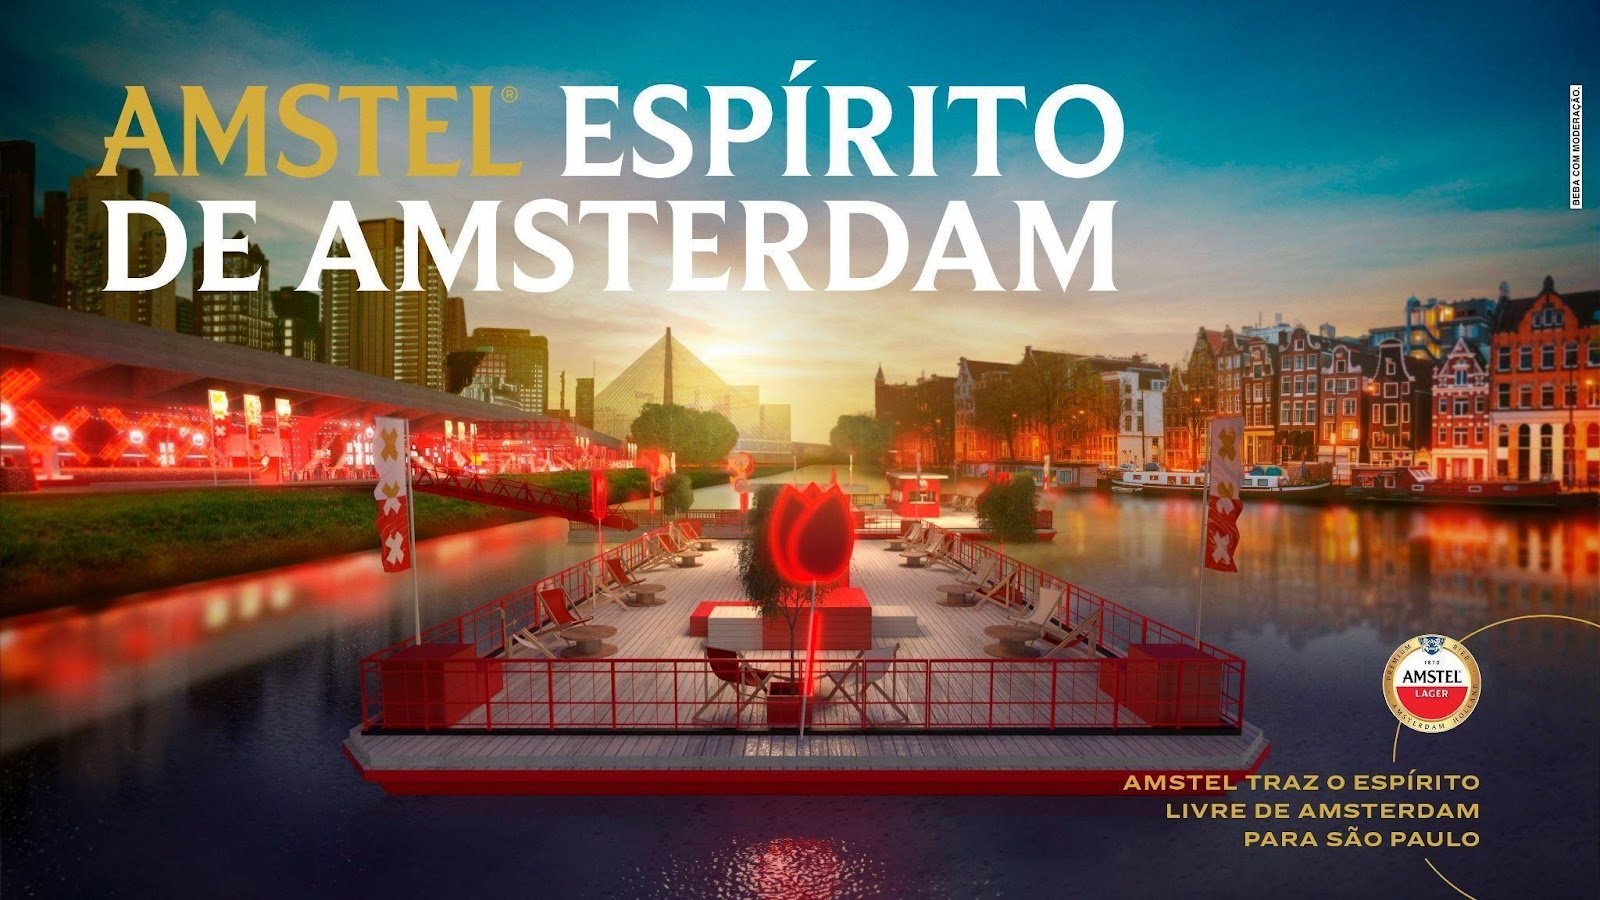 Amstel promove evento as margens do Rio Pinheiros celebrando o espirito livre de Amsterdam POP CYBER